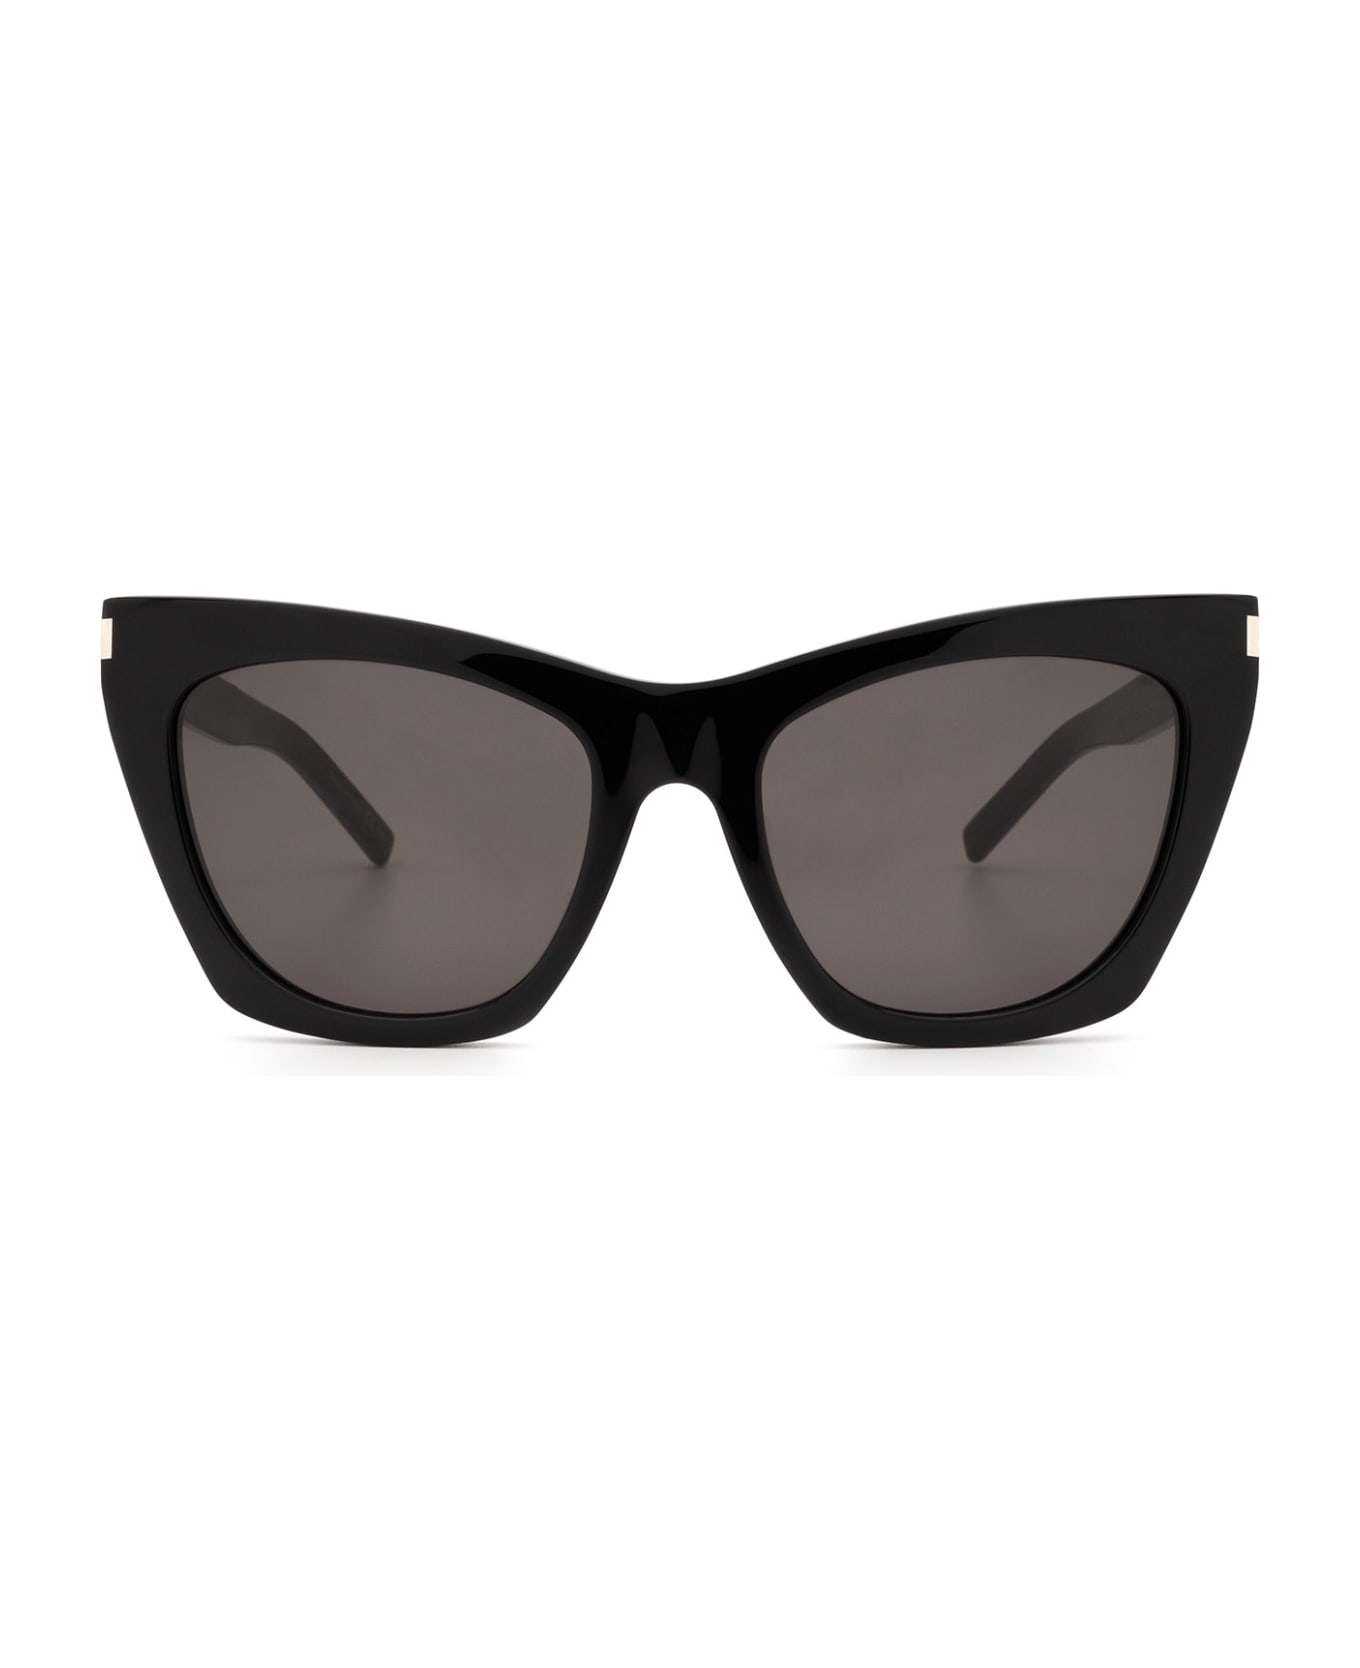 Saint Laurent Eyewear Sl 214 Black Sunglasses - Black